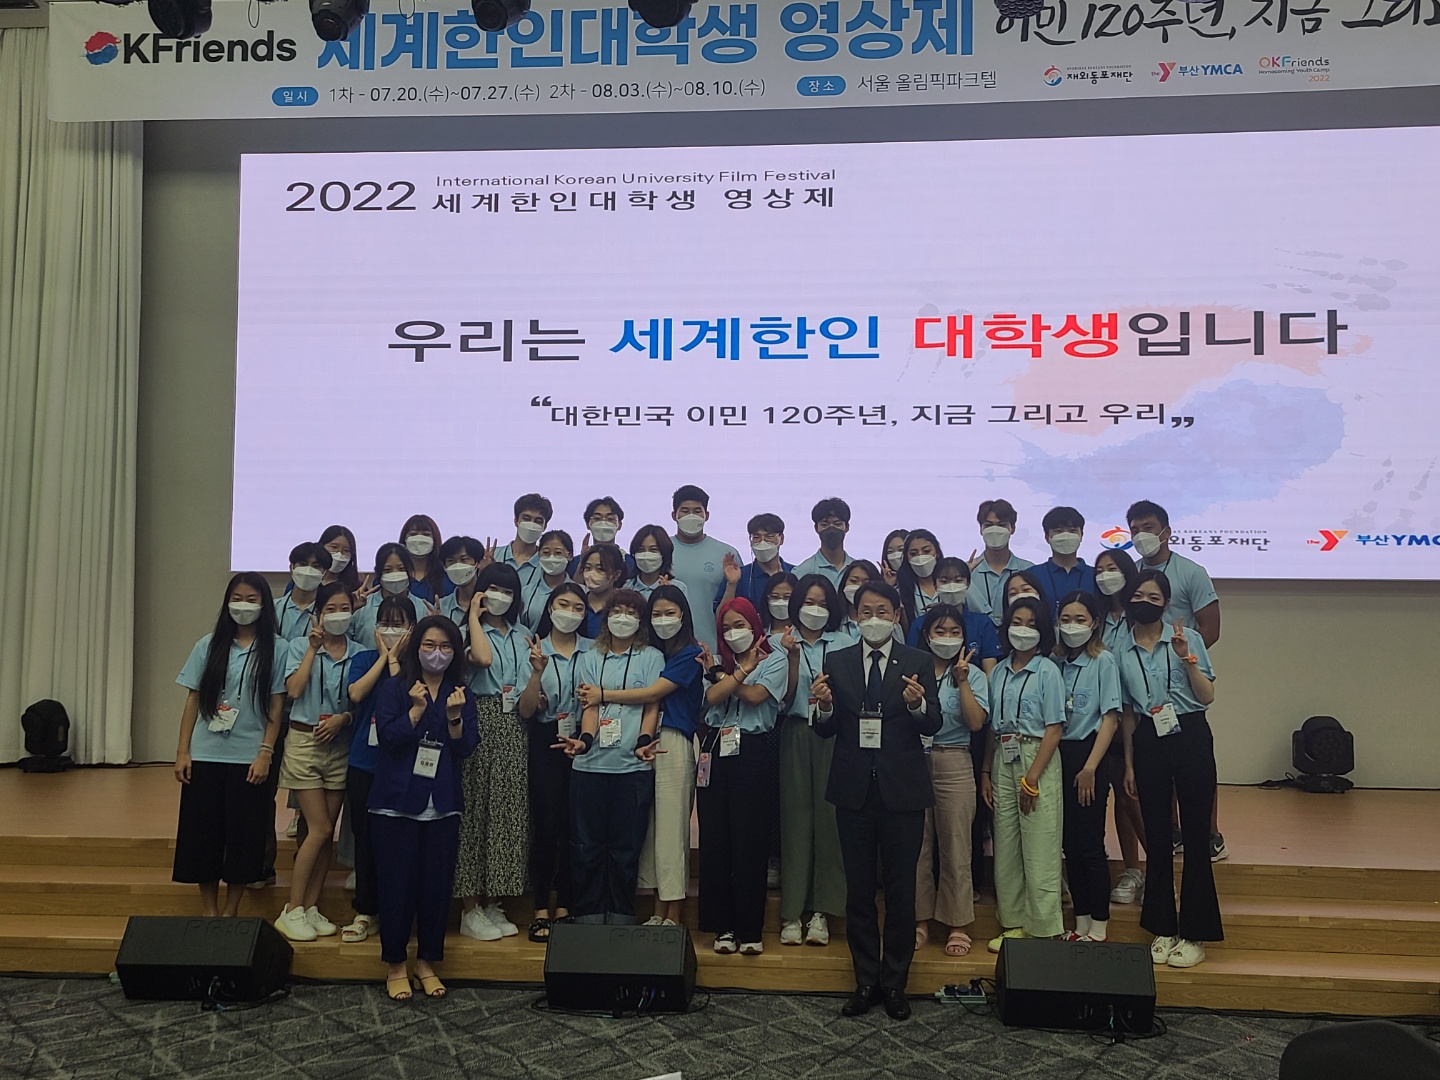 Памятное фото судей и региональной команды Конджу после первого предварительного тура «Всемирного фестиваля студенческих фильмов зарубежных корейцев»